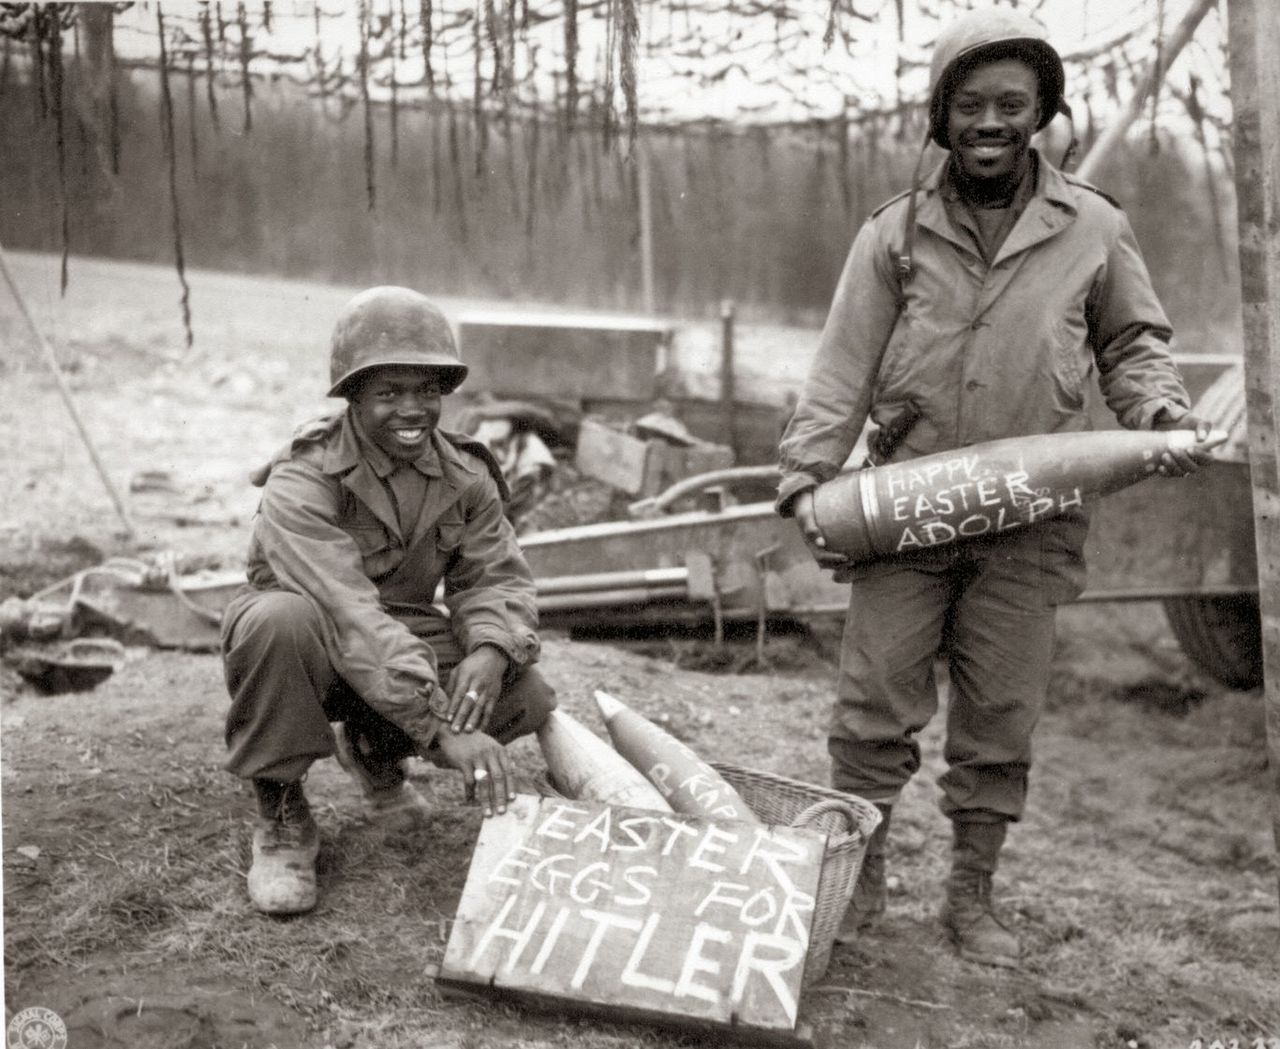 Dwóch czarnoskórych amerykańskich żołnierzy trzymających pocisk artyleryjski z życzeniami „wesołych Świąt Wielkanocnych dla Adolfa Hitlera” wydaje się być strasznie dziwnym połączeniem bazującym na nietypowym poczuciu humoru. Ale takie są realia wojny – trzeba wprowadzić chociaż trochę uśmiechu w trudnych czasach.